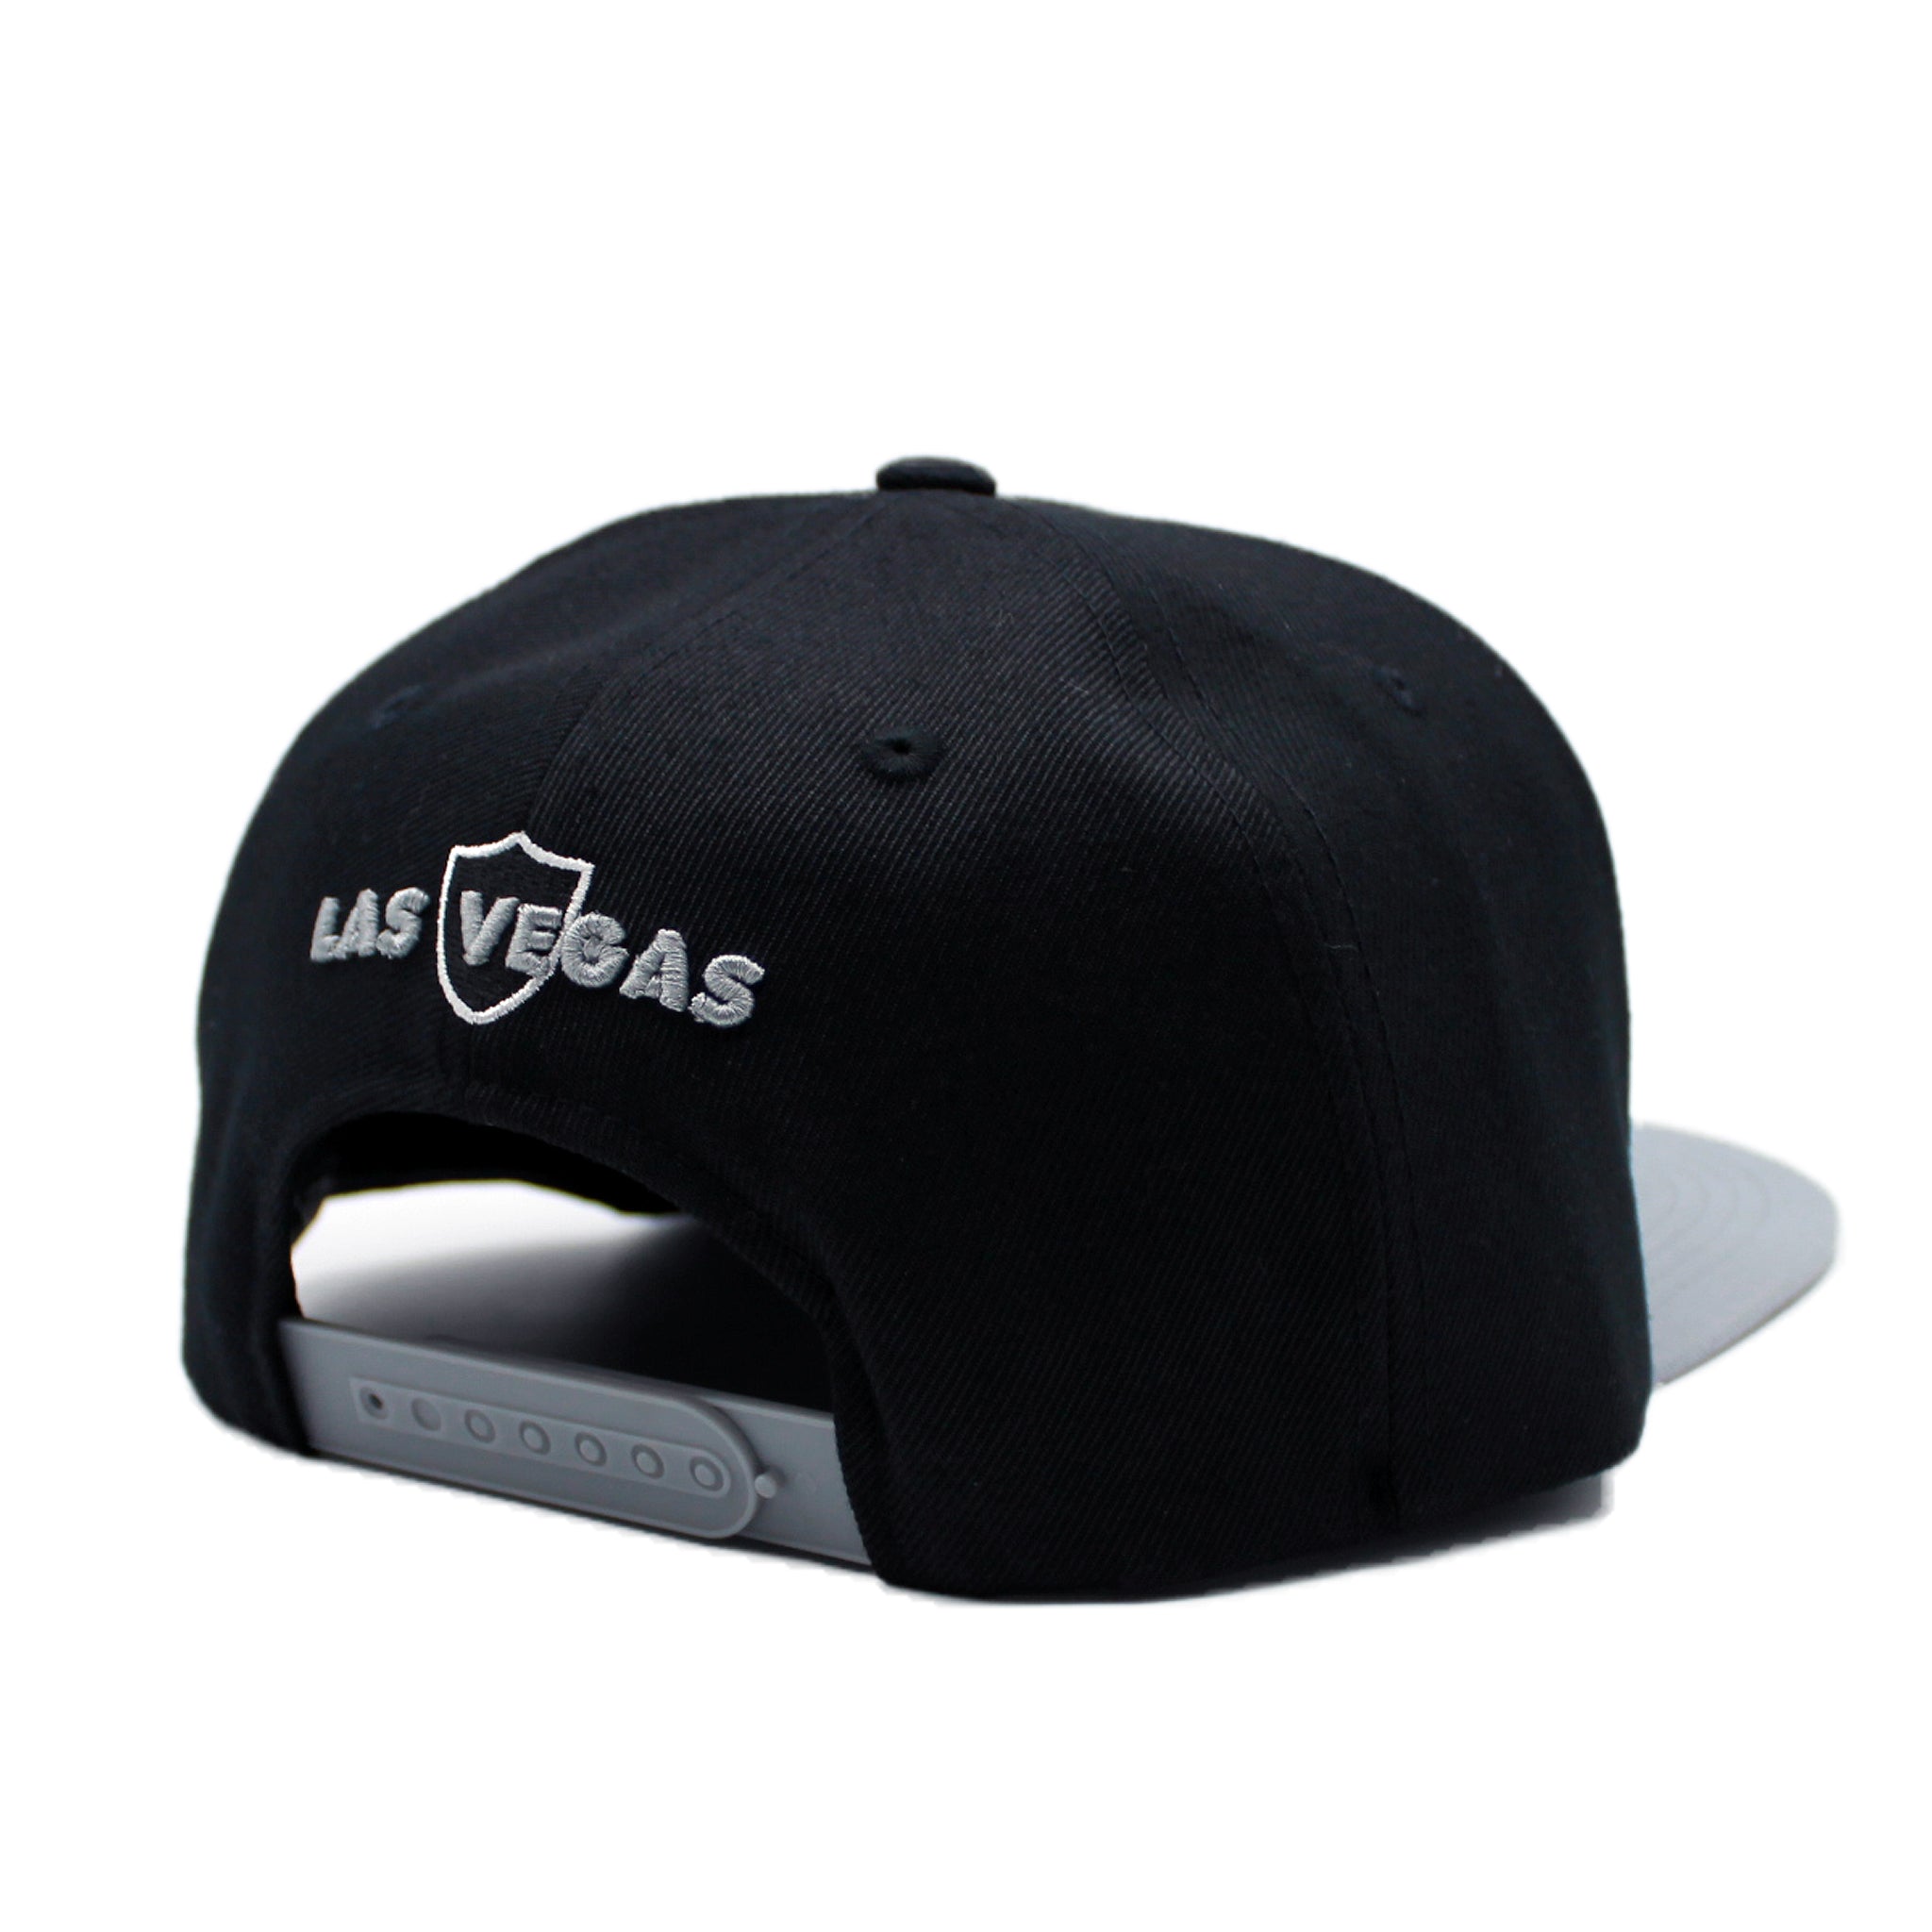 TOP LEVEL : LAS VEGAS  Front-raised Rubber Patch Design Snapback Cap